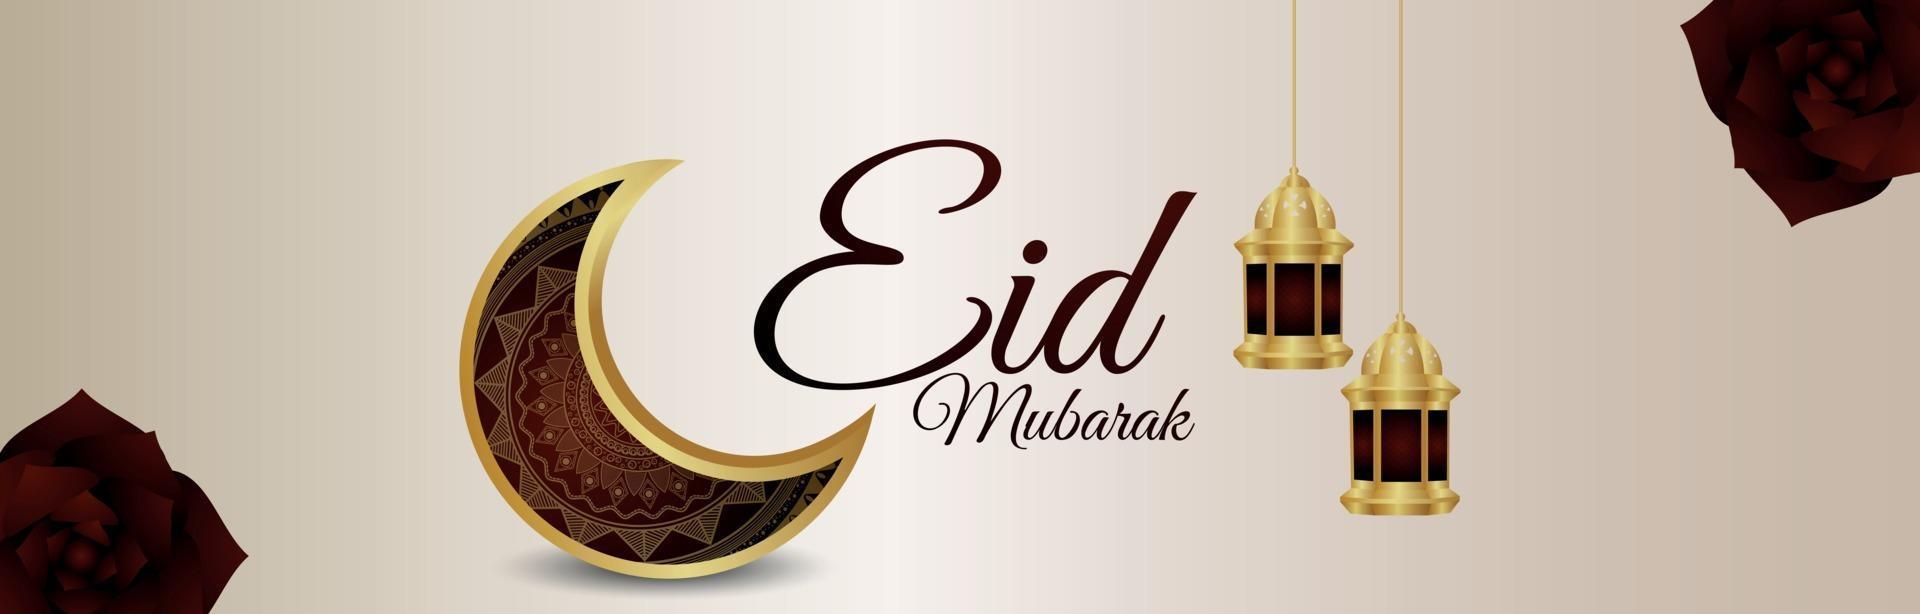 Eid Mubarak islamisches Festival mit arabischem Muster Mond und Laterne vektor